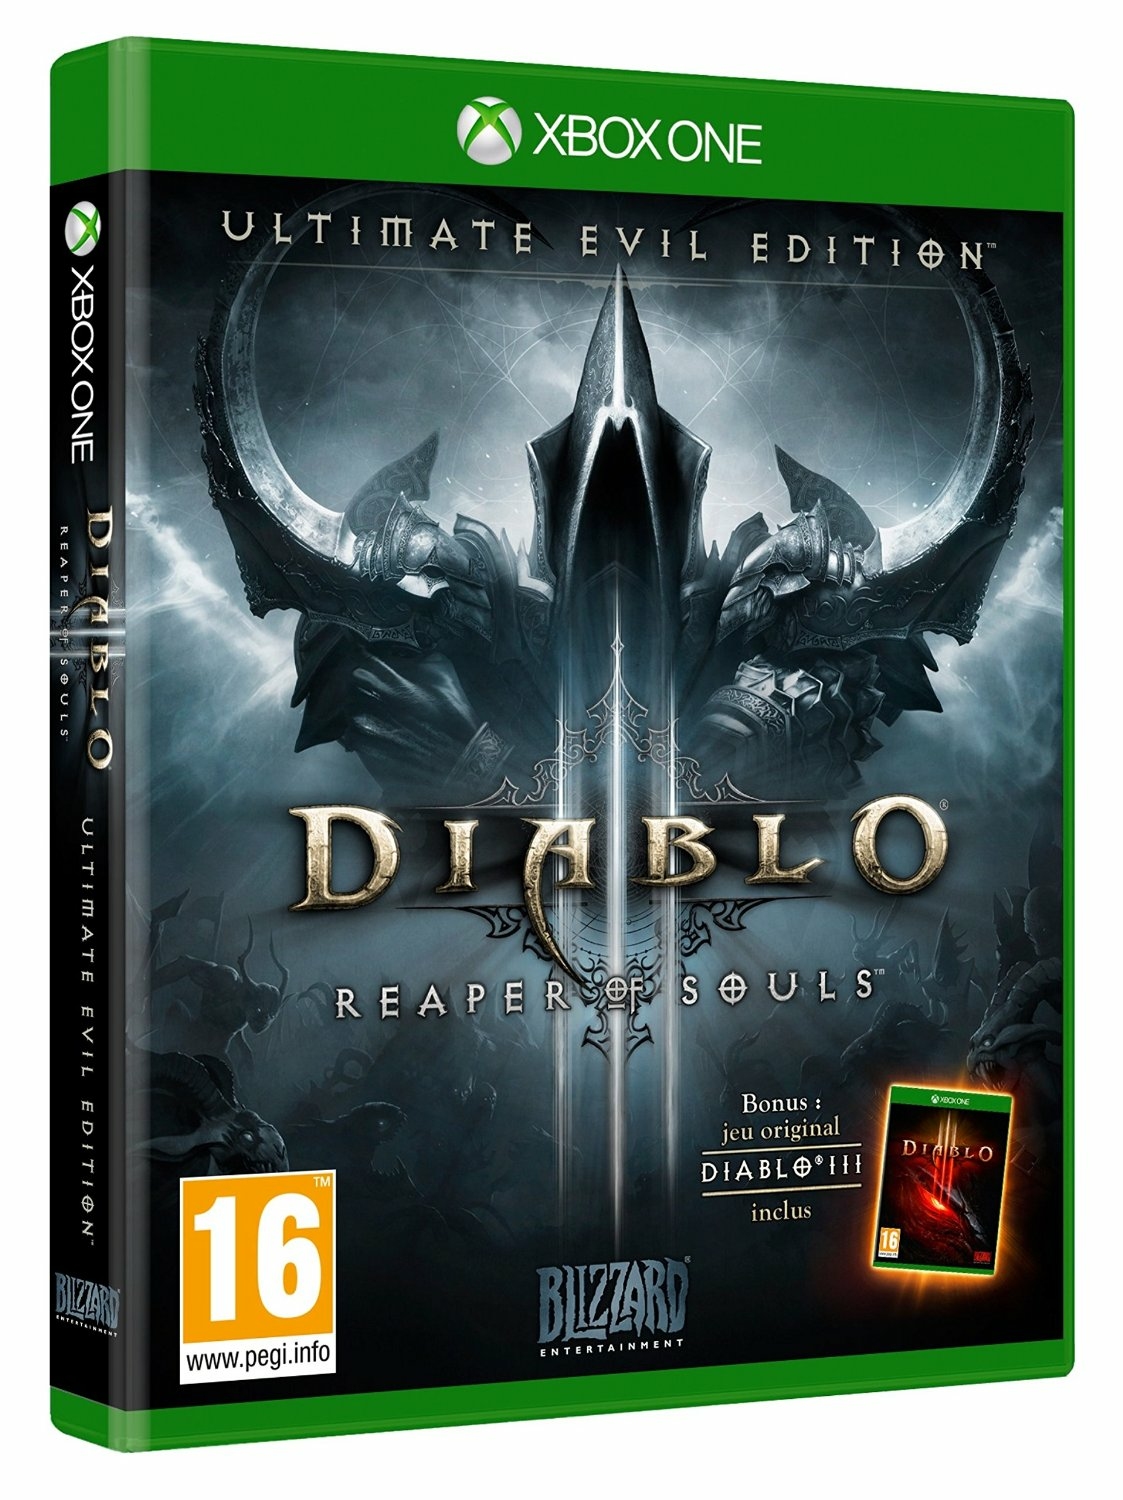 Diablo xbox купить. Diablo 3 диск Xbox one. Diablo 3 диск Xbox. Диск Diablo 3 Reaper of Souls Xbox. Diablo III: Reaper of Souls.